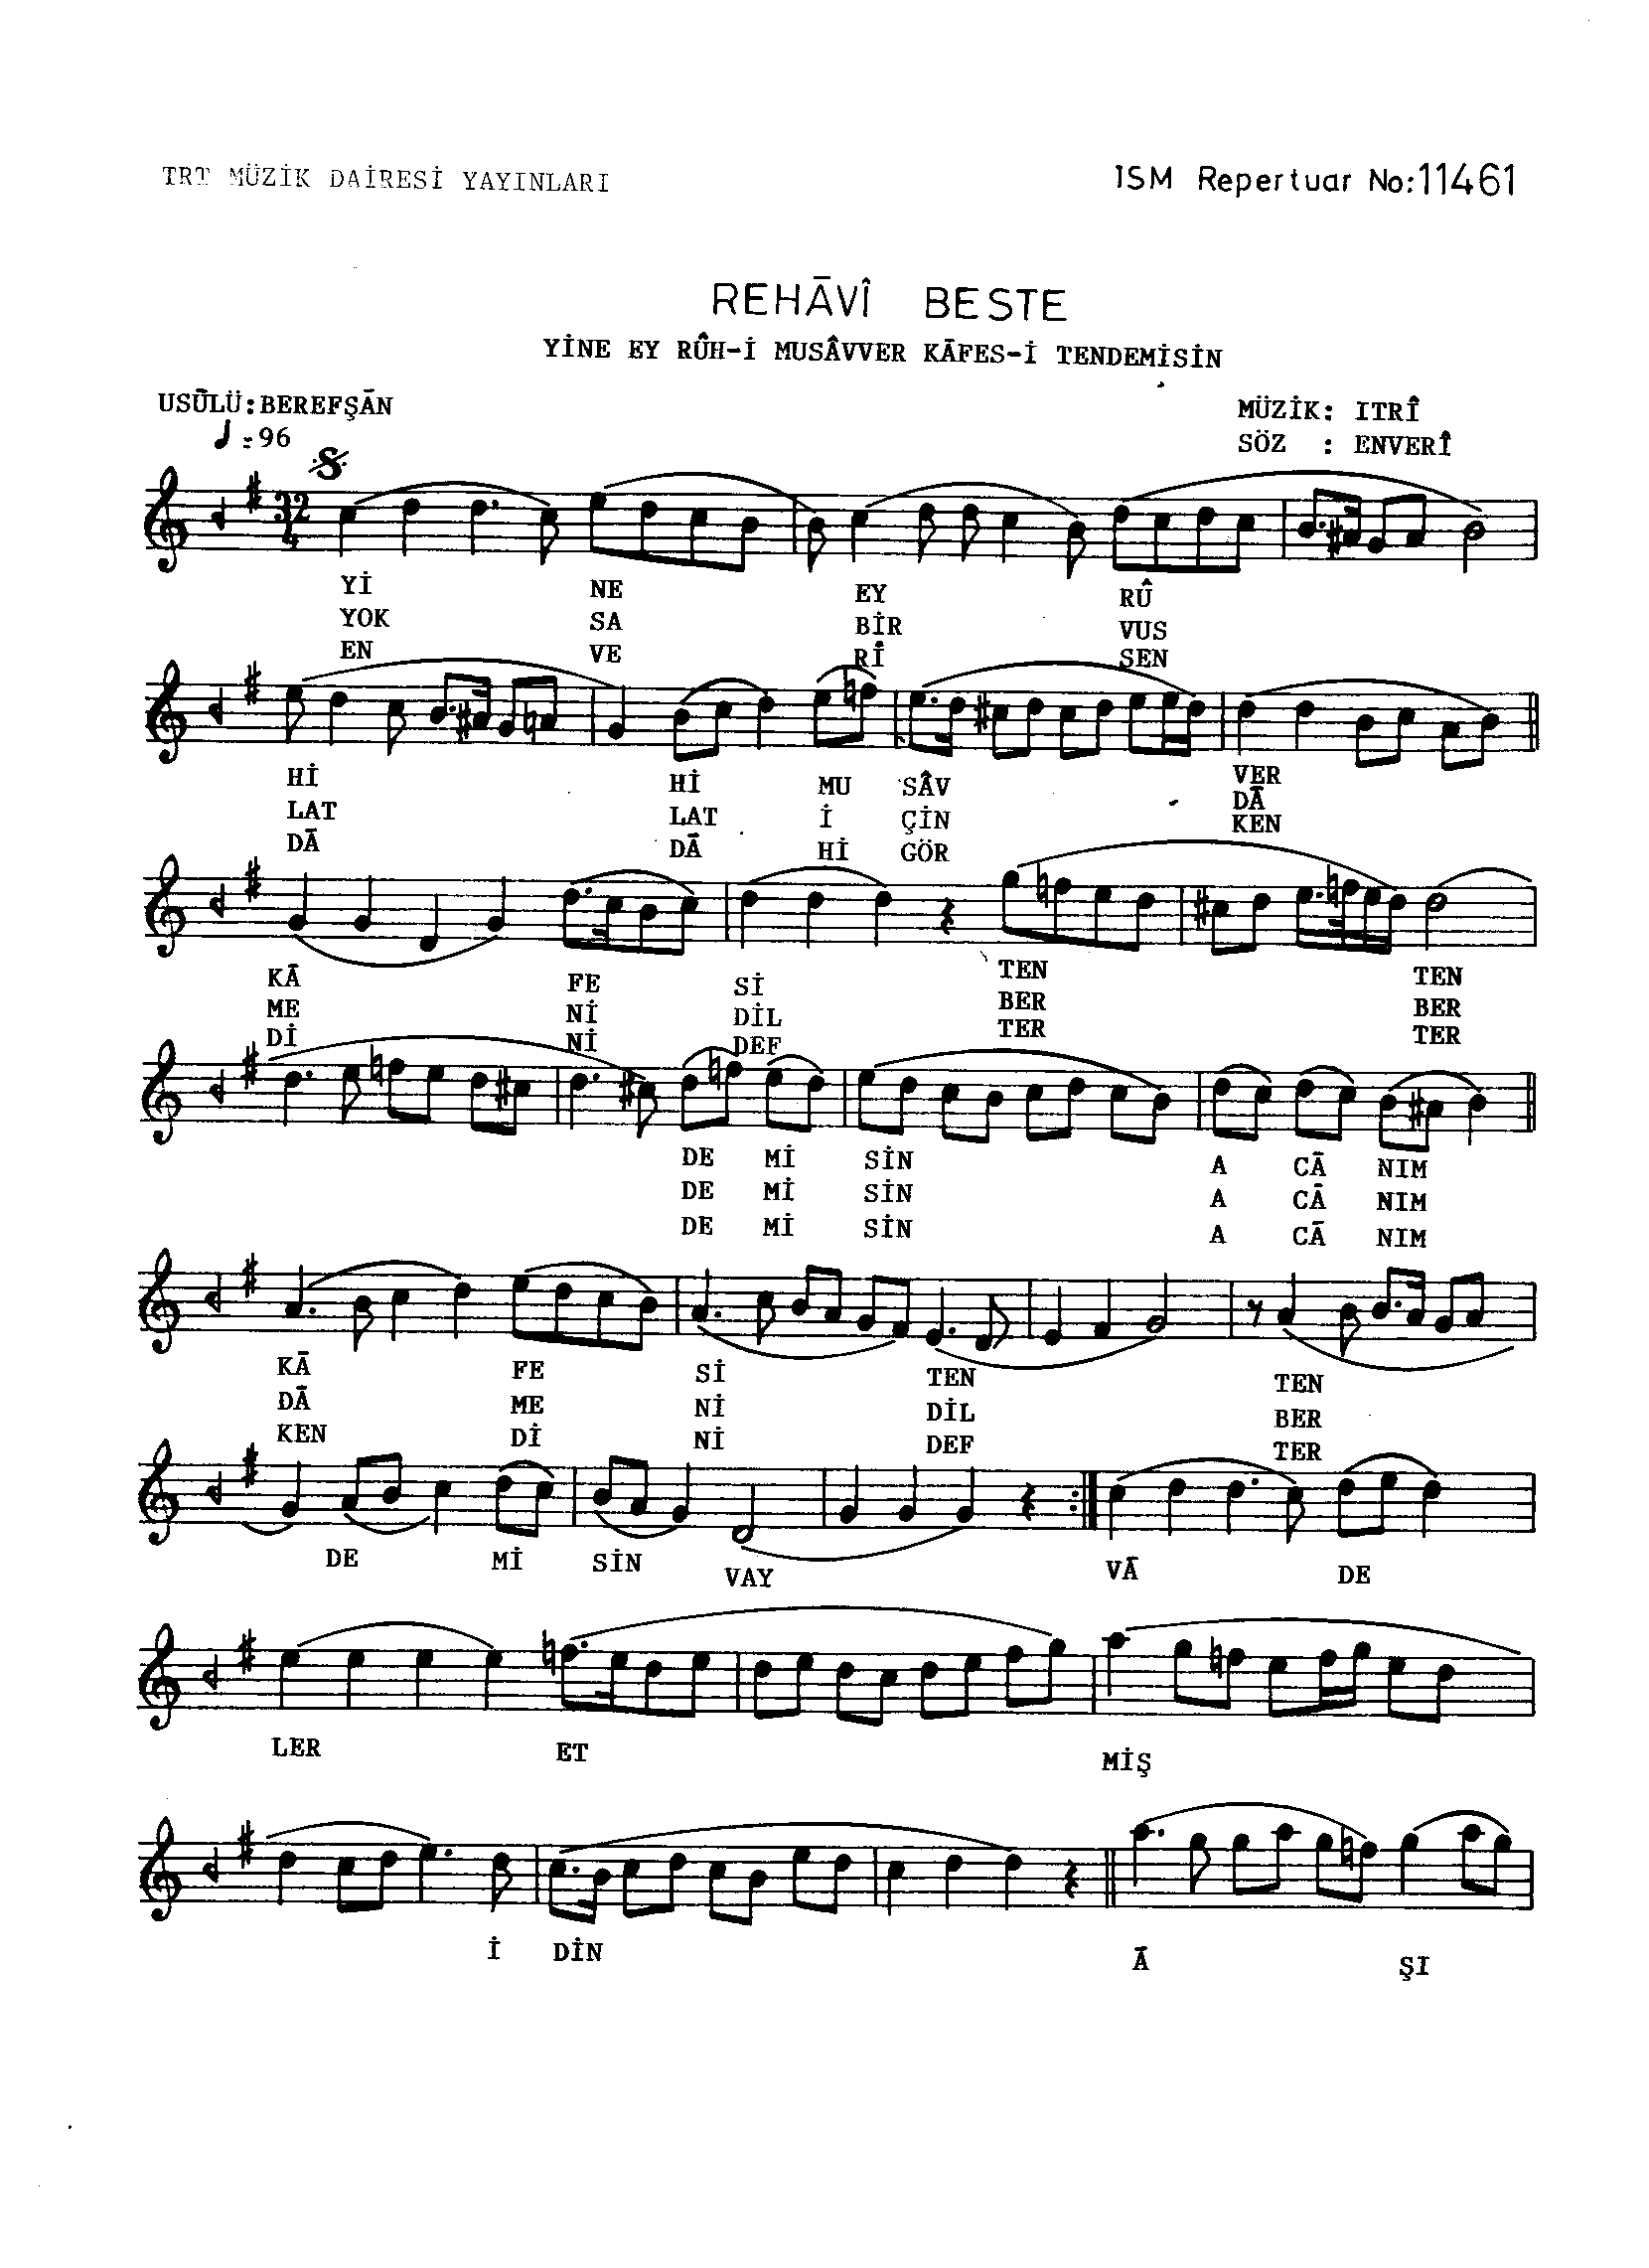 Rehâvi - Beste - Itrî(Buhûrizâde Mustafa Efendi) - Sayfa 1